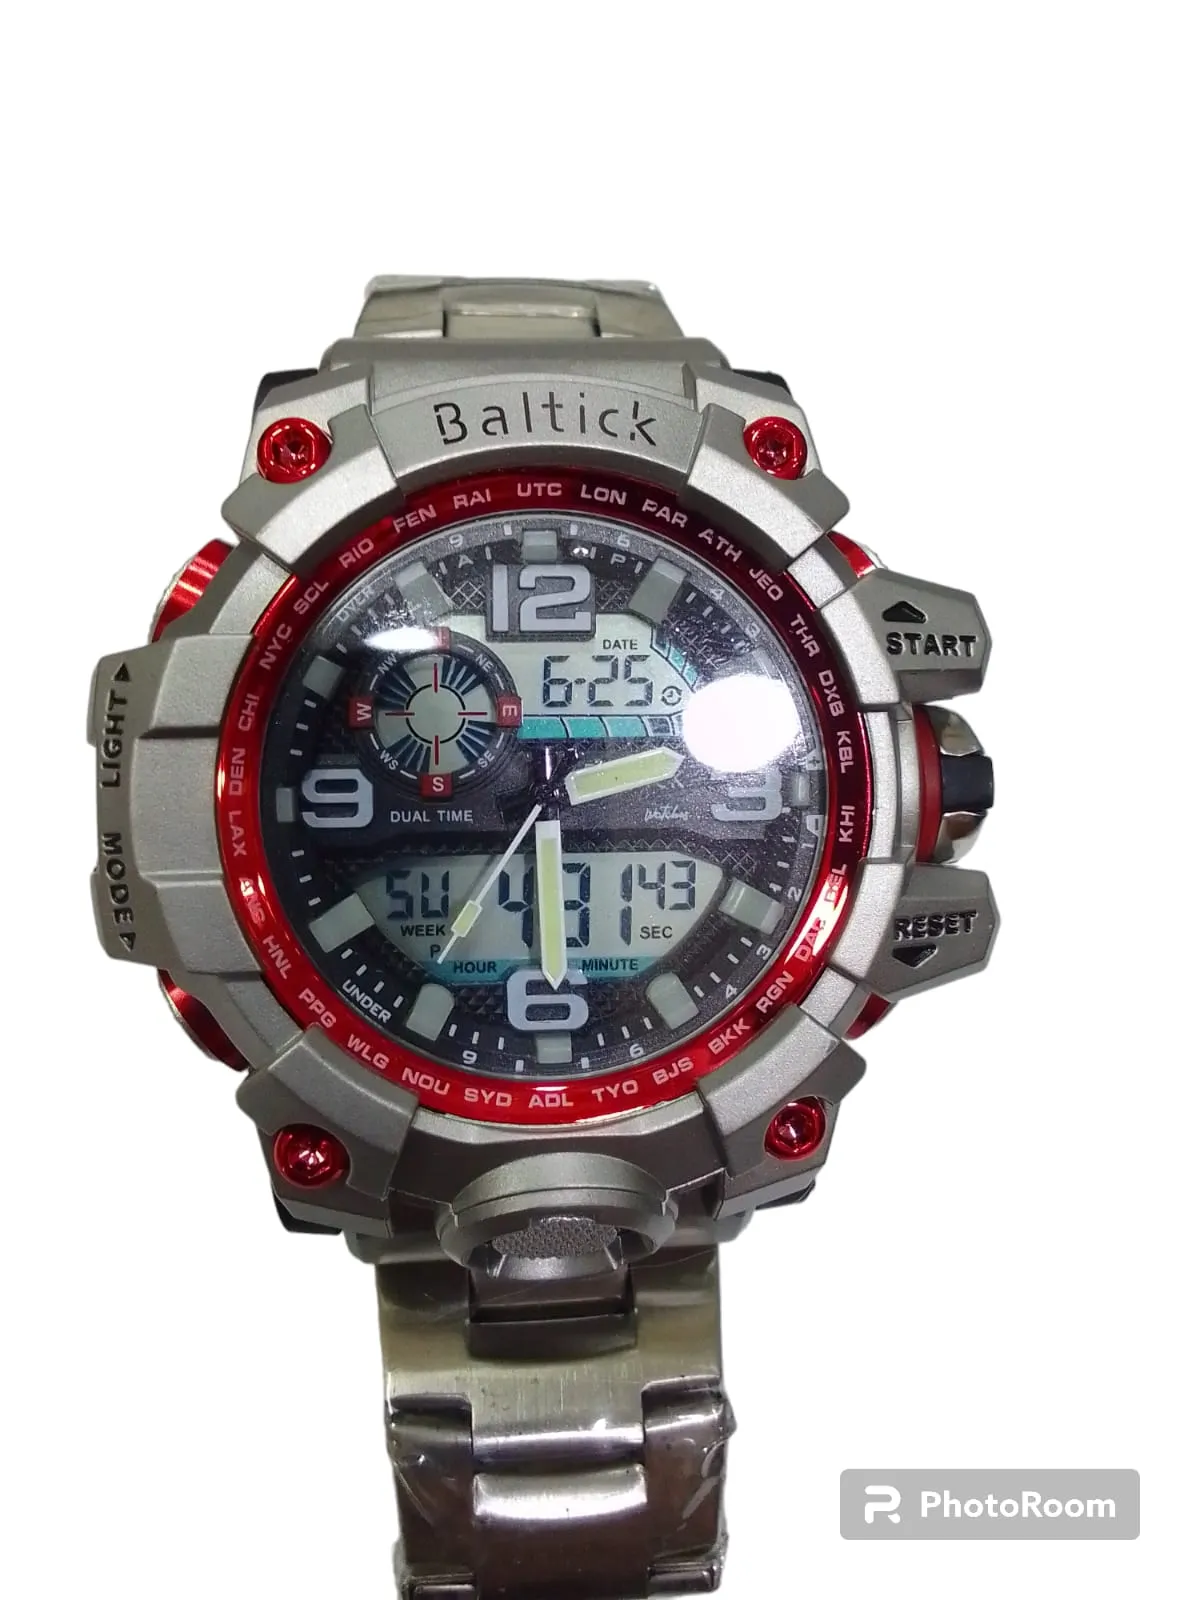 Reloj Baltick Caballero Plateado y Rojo Metalico 